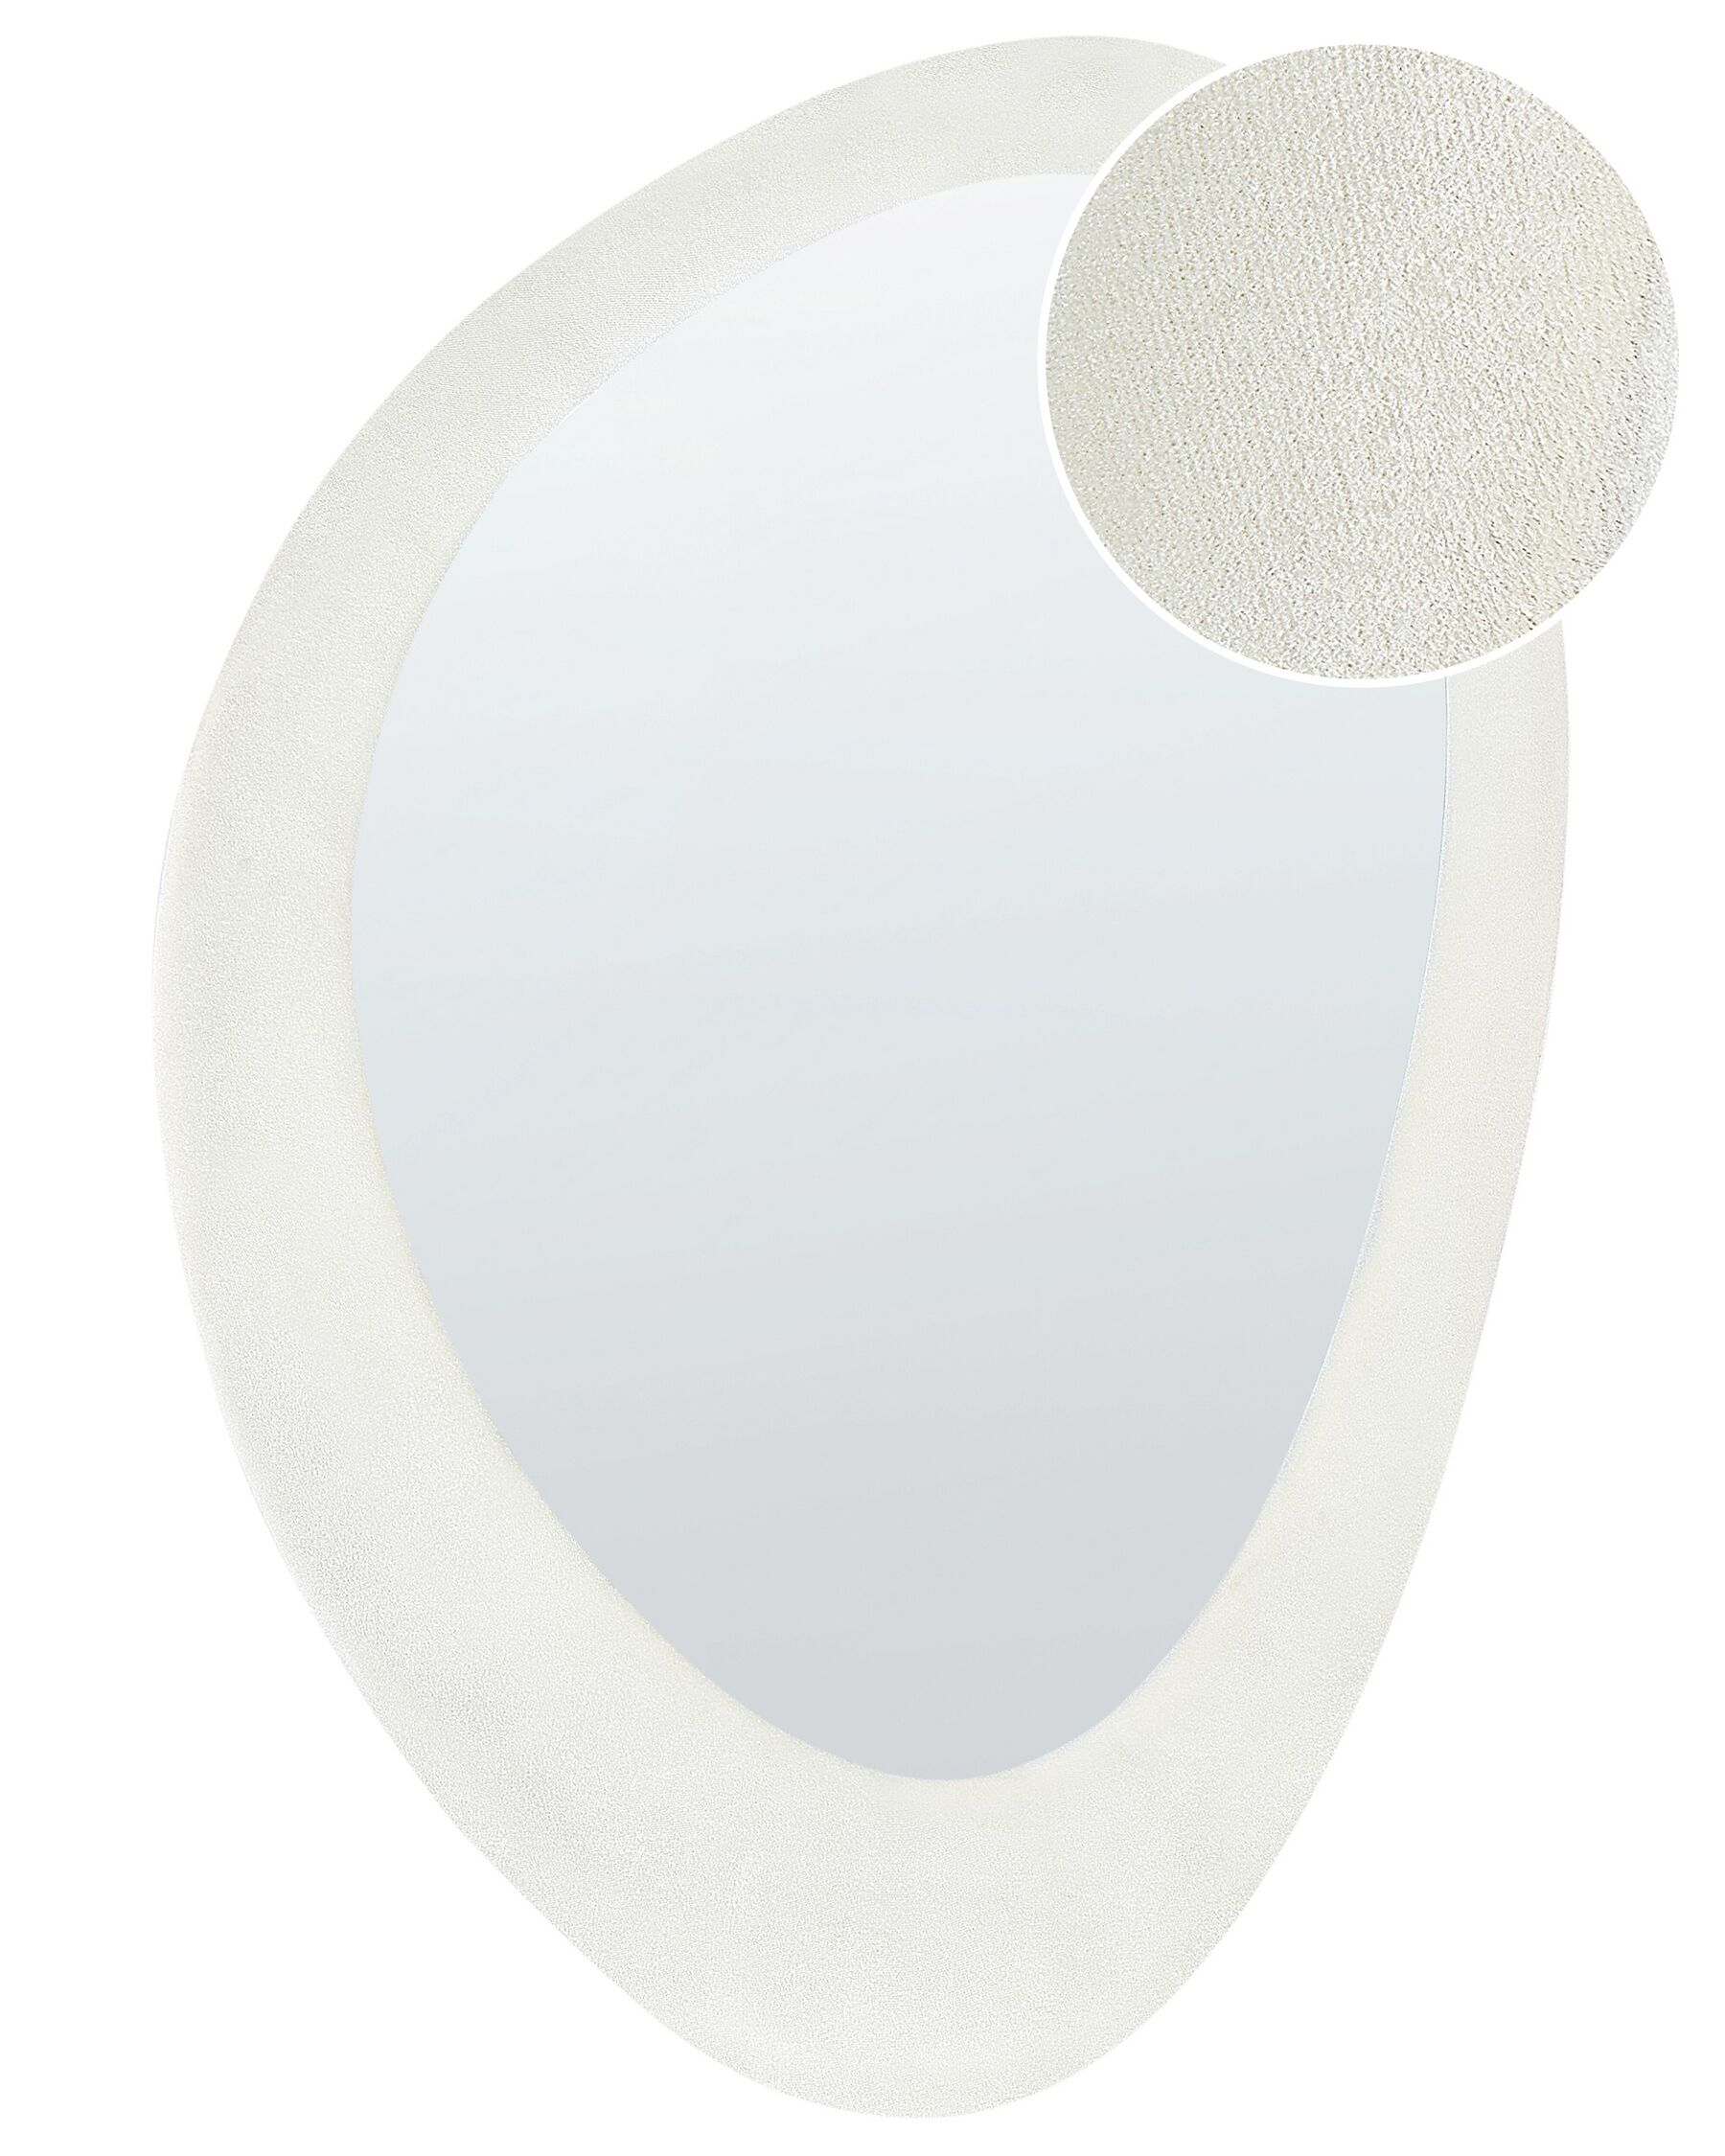 Miroir mural en velours blanc 60 x 90 cm AUDES_903918